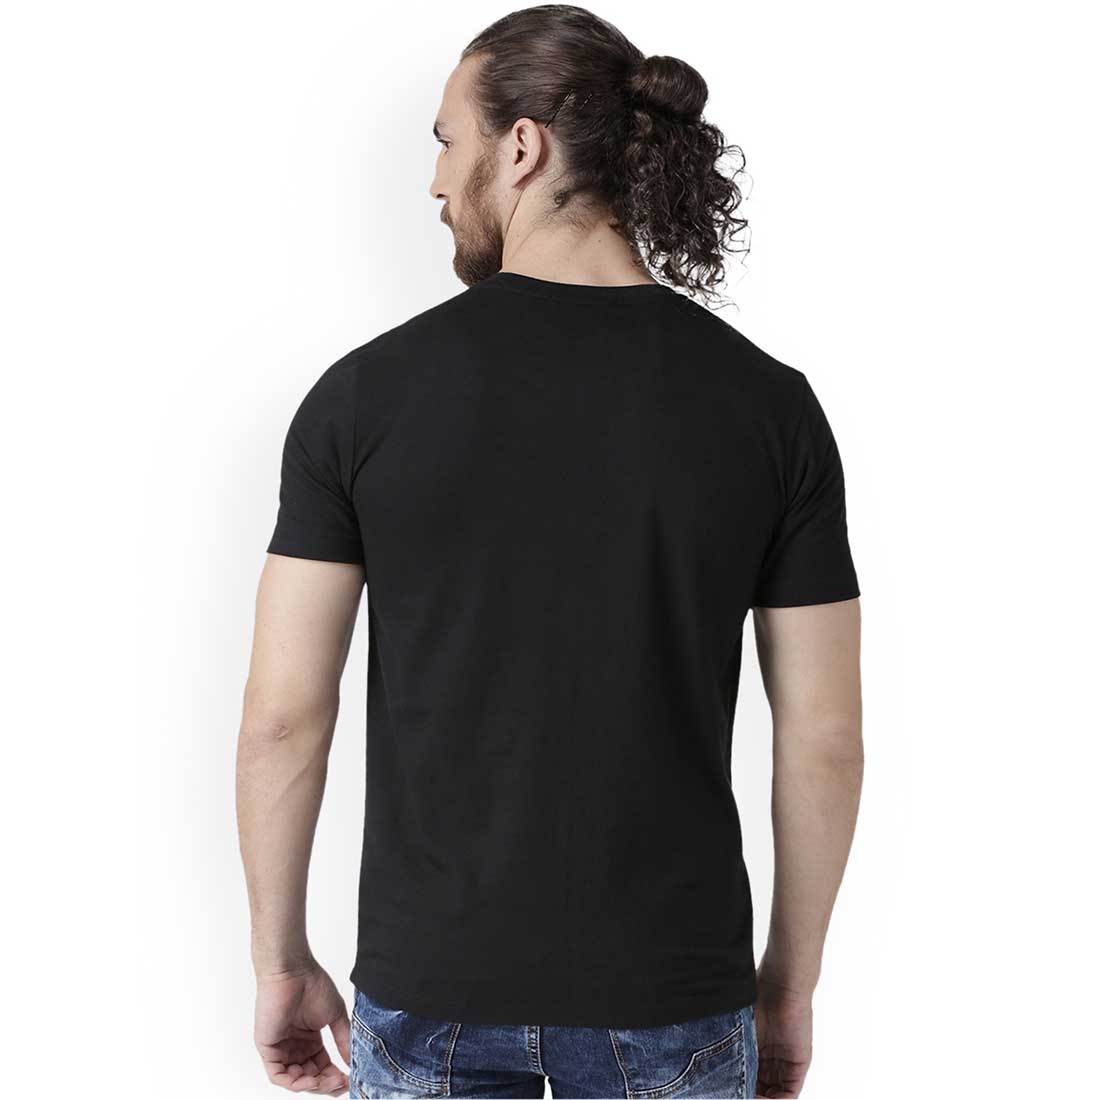 Professor X Black Men T-Shirt